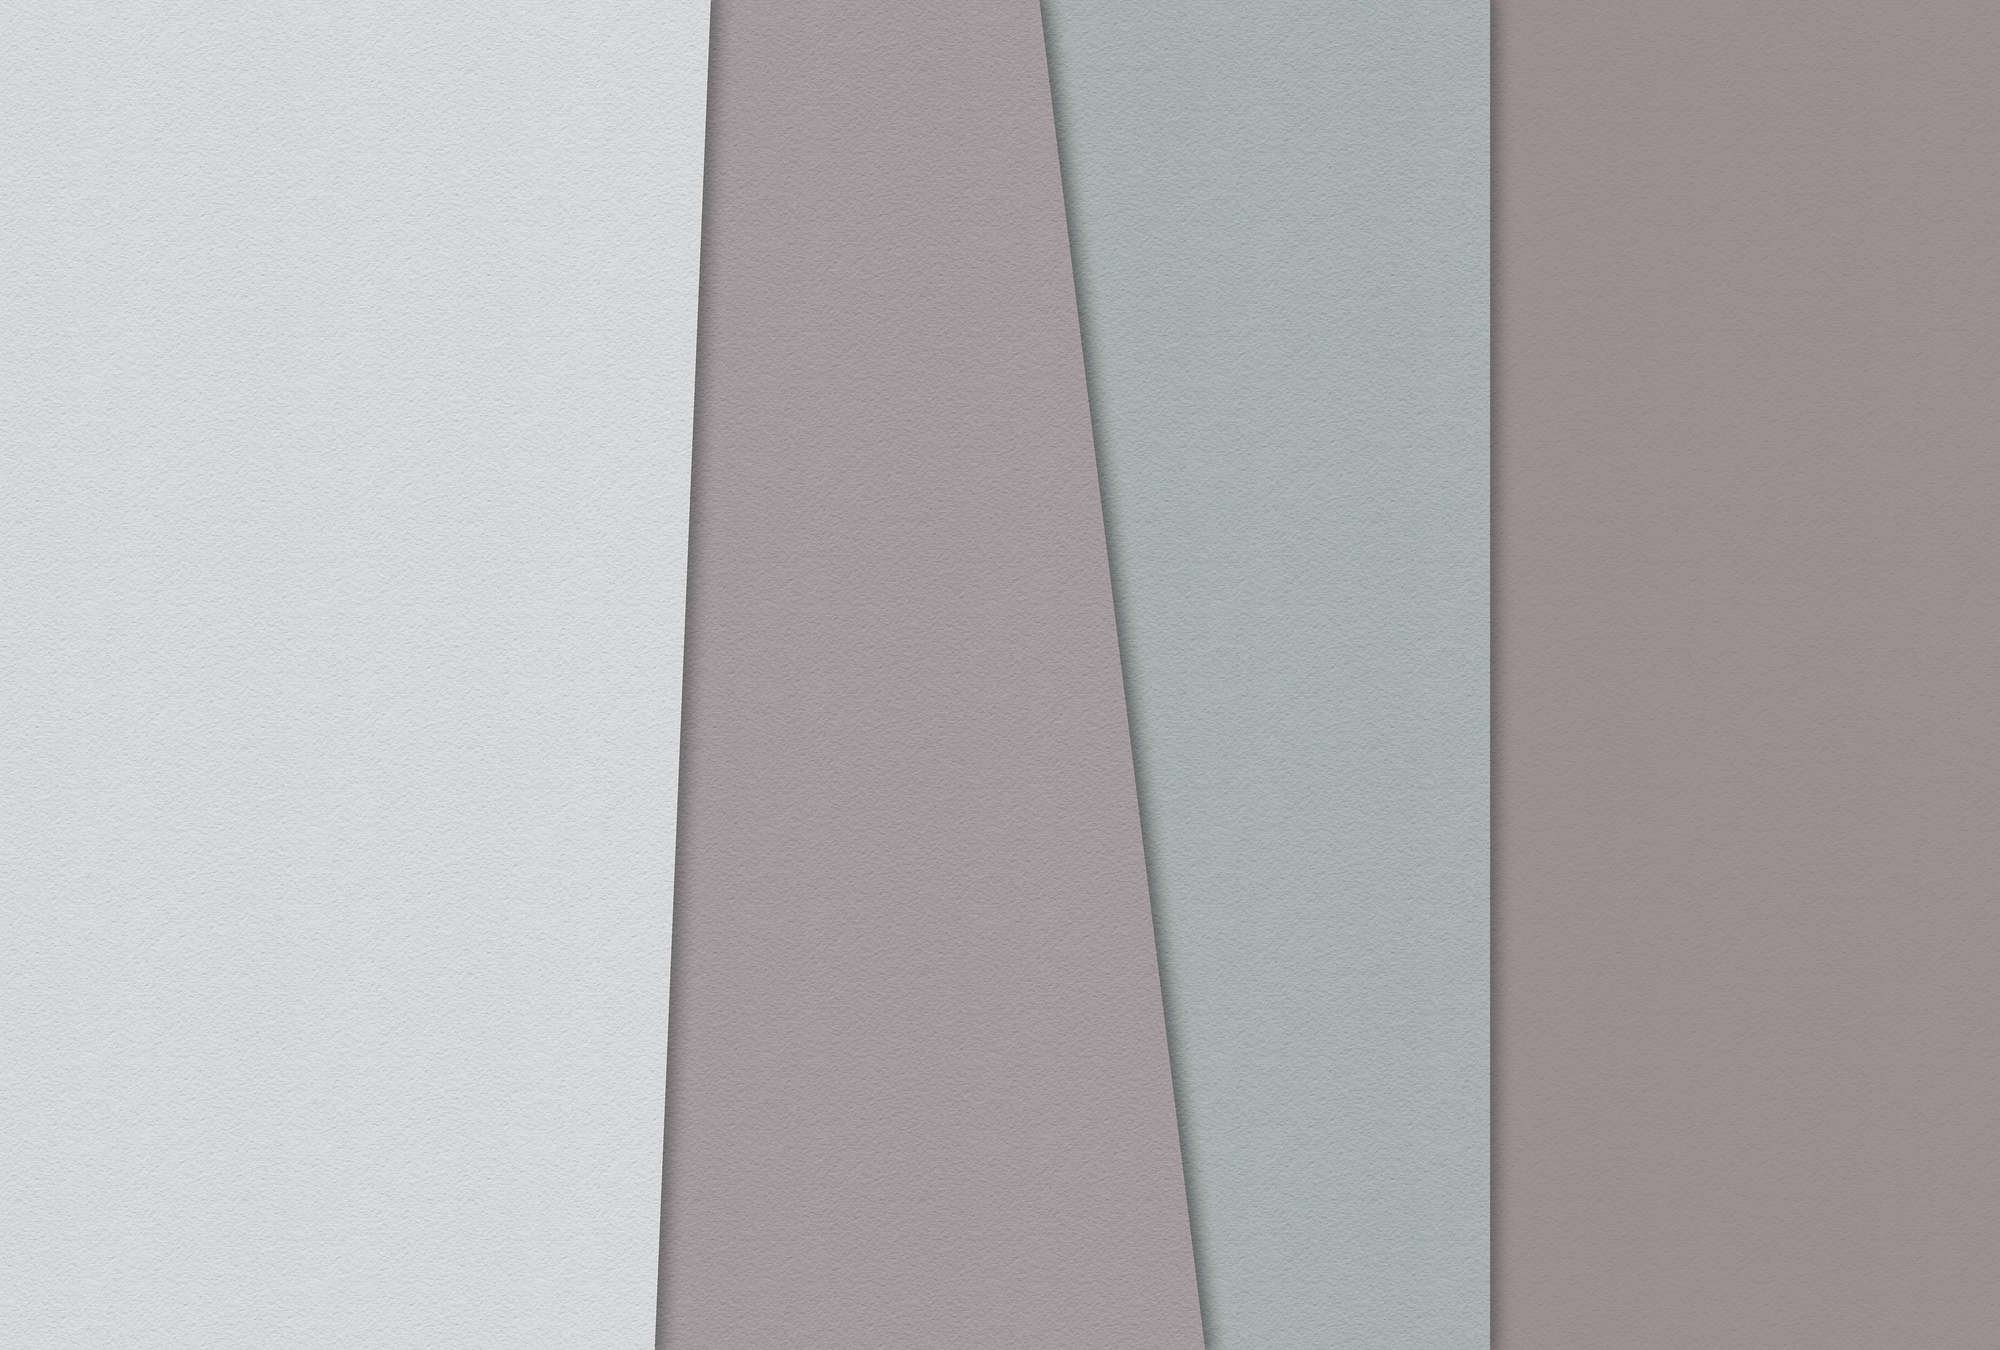             Layered paper 3 - Papier peint minimaliste À structure champs de couleurs-papier à la cuve - bleu, crème | Nacré intissé lisse
        